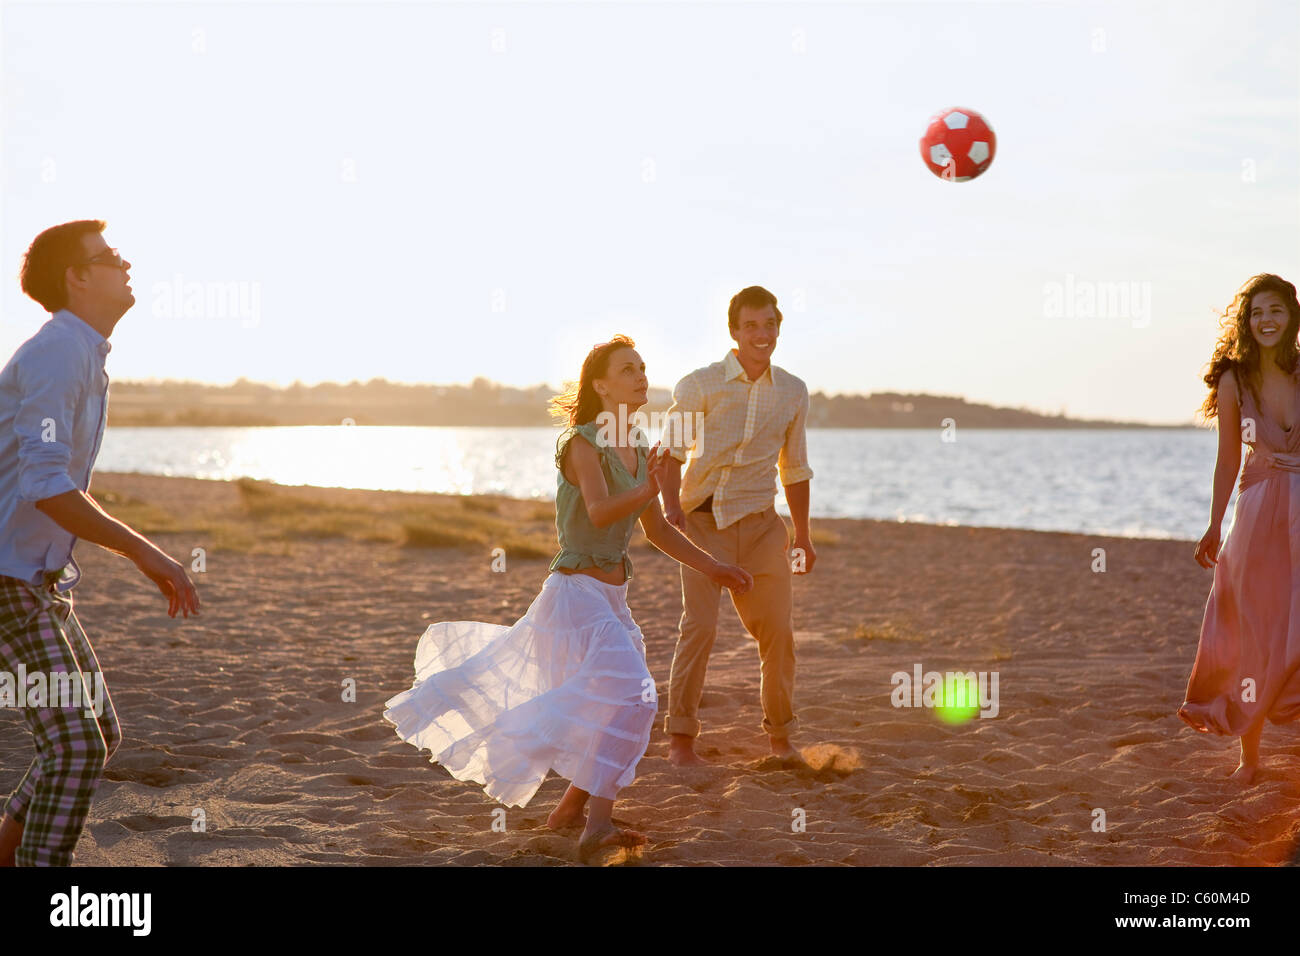 Menschen Spielen Mit Fußball Am Strand Stockfotografie Alamy